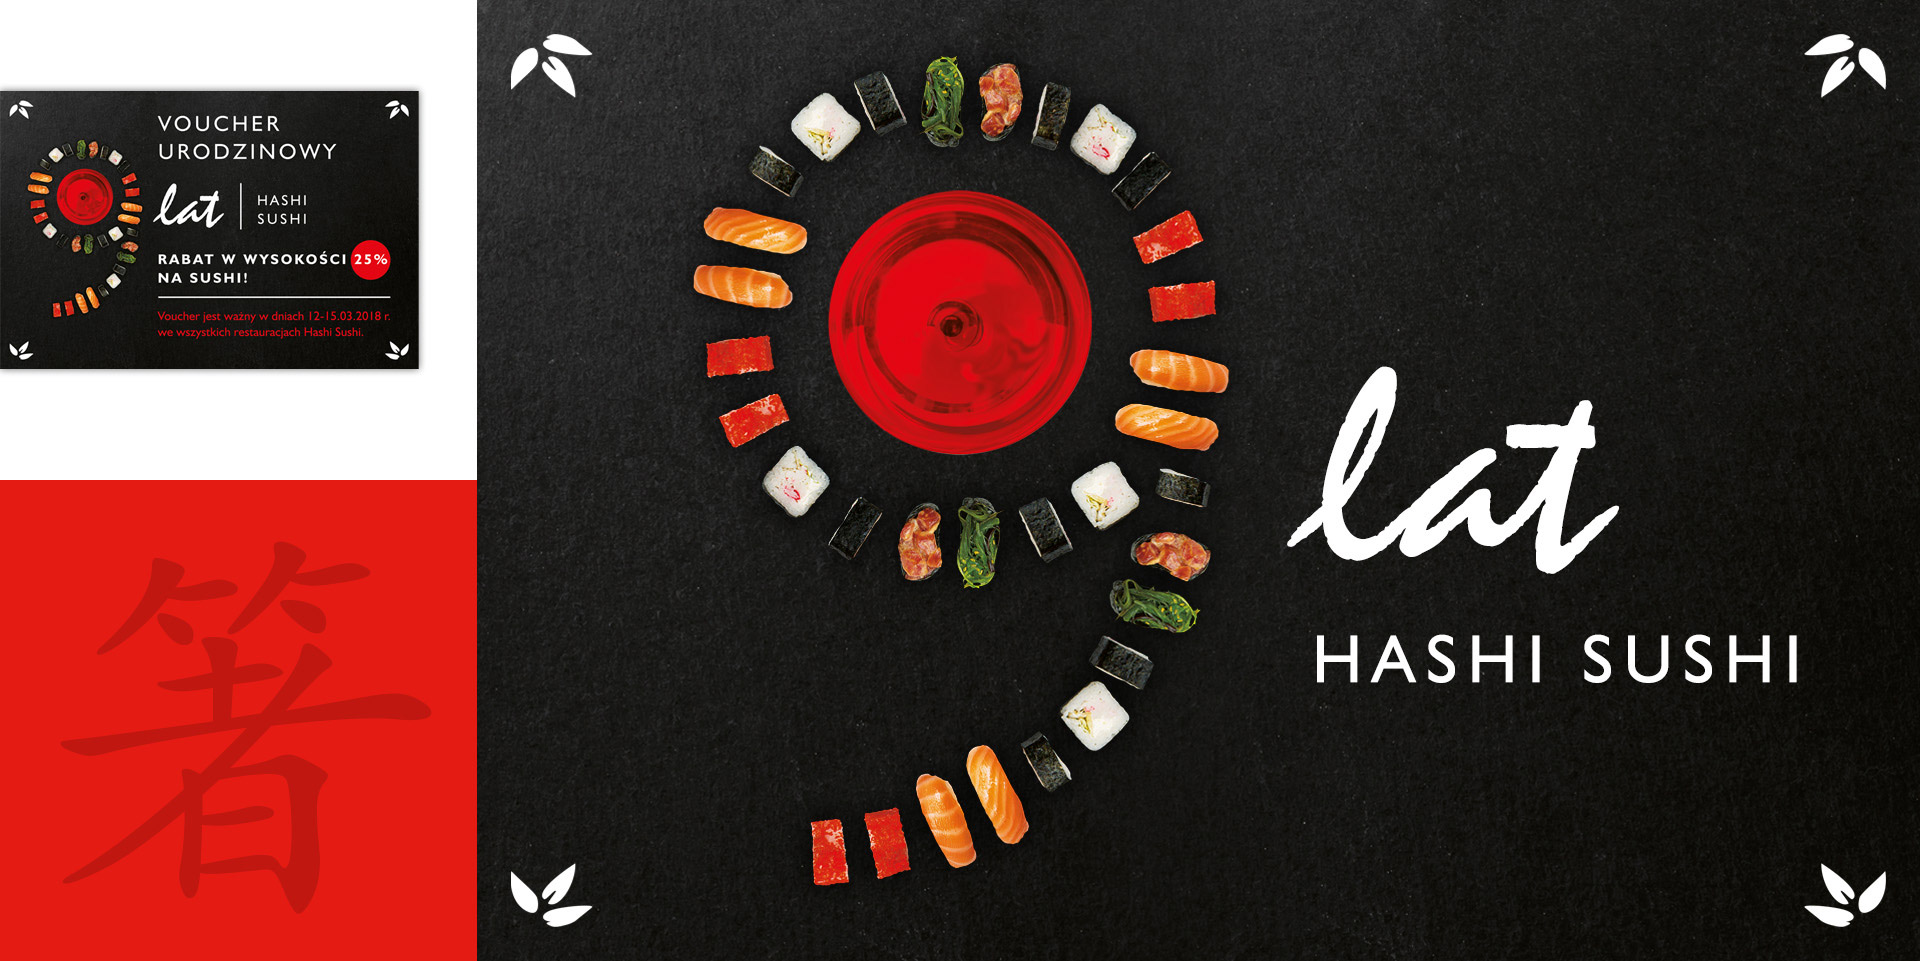 Hashi Sushi, identyfikacja wizualna, komunikacja reklamowa, projekt graficzny, logo, 90 lat sushi, key visual, kreacja